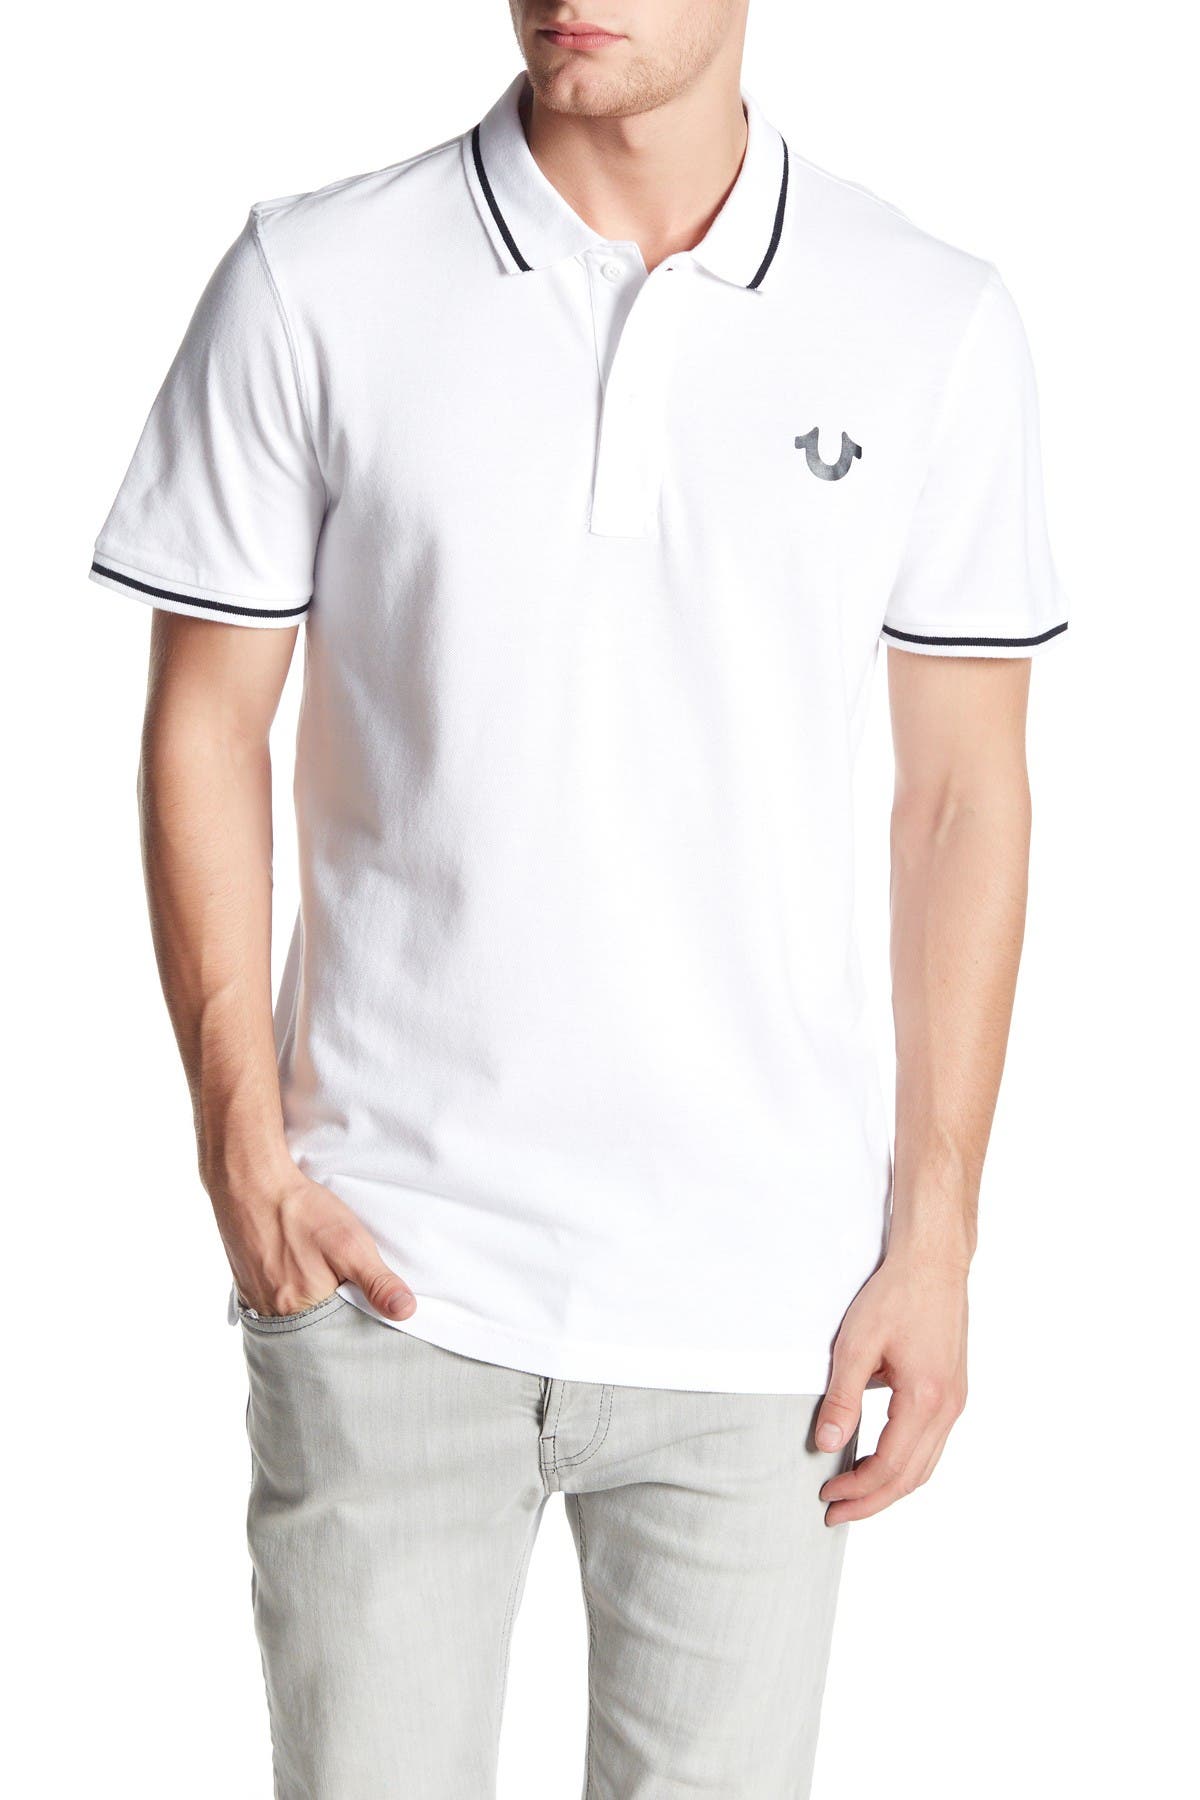 white true religion polo shirt